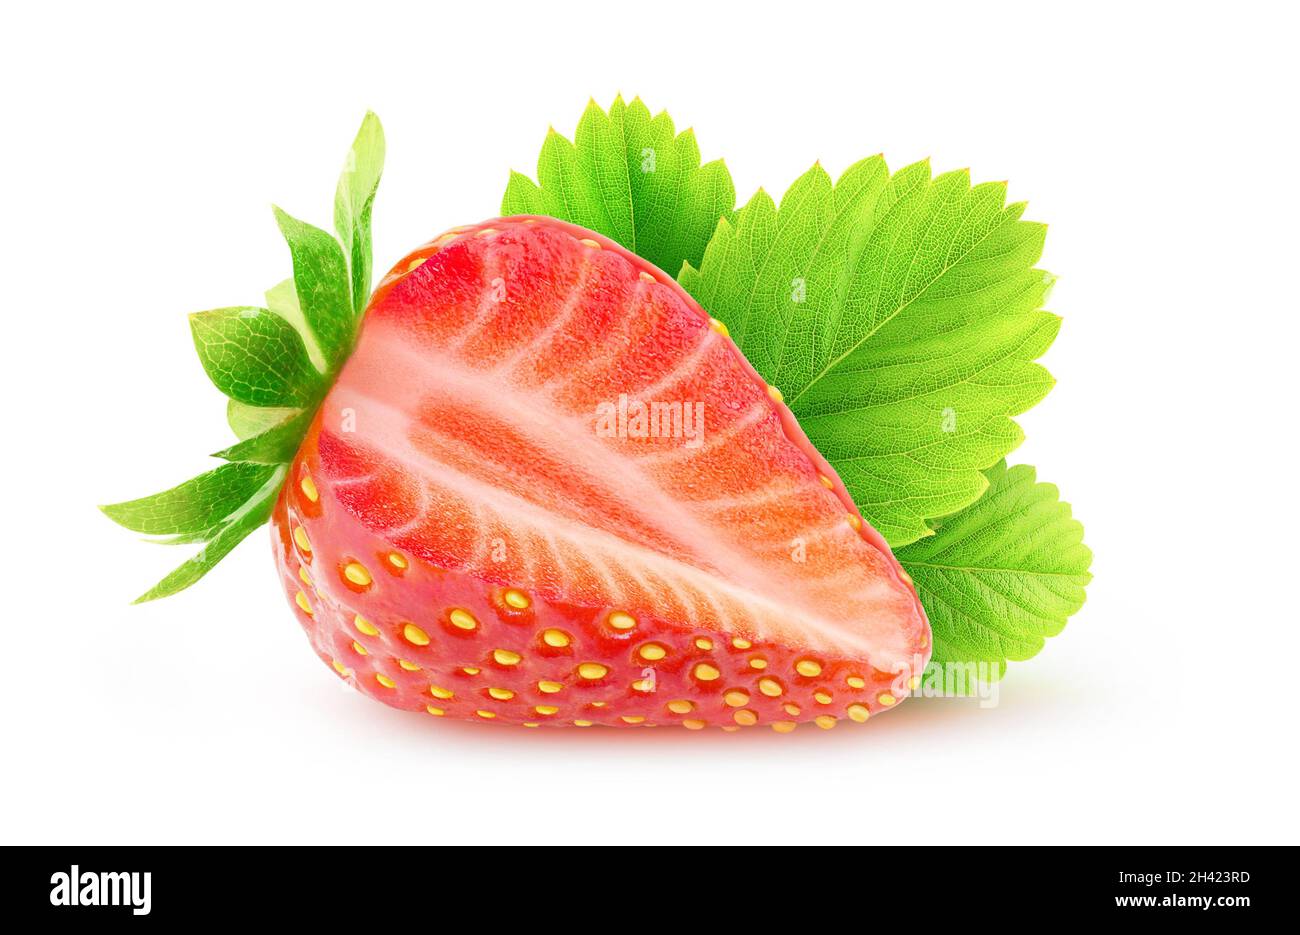 Isolierte geschnittene Früchte. Eine frische Erdbeere mit ausgeschnittenem Stück mit isoliertem Blatt auf weißem Hintergrund Stockfoto